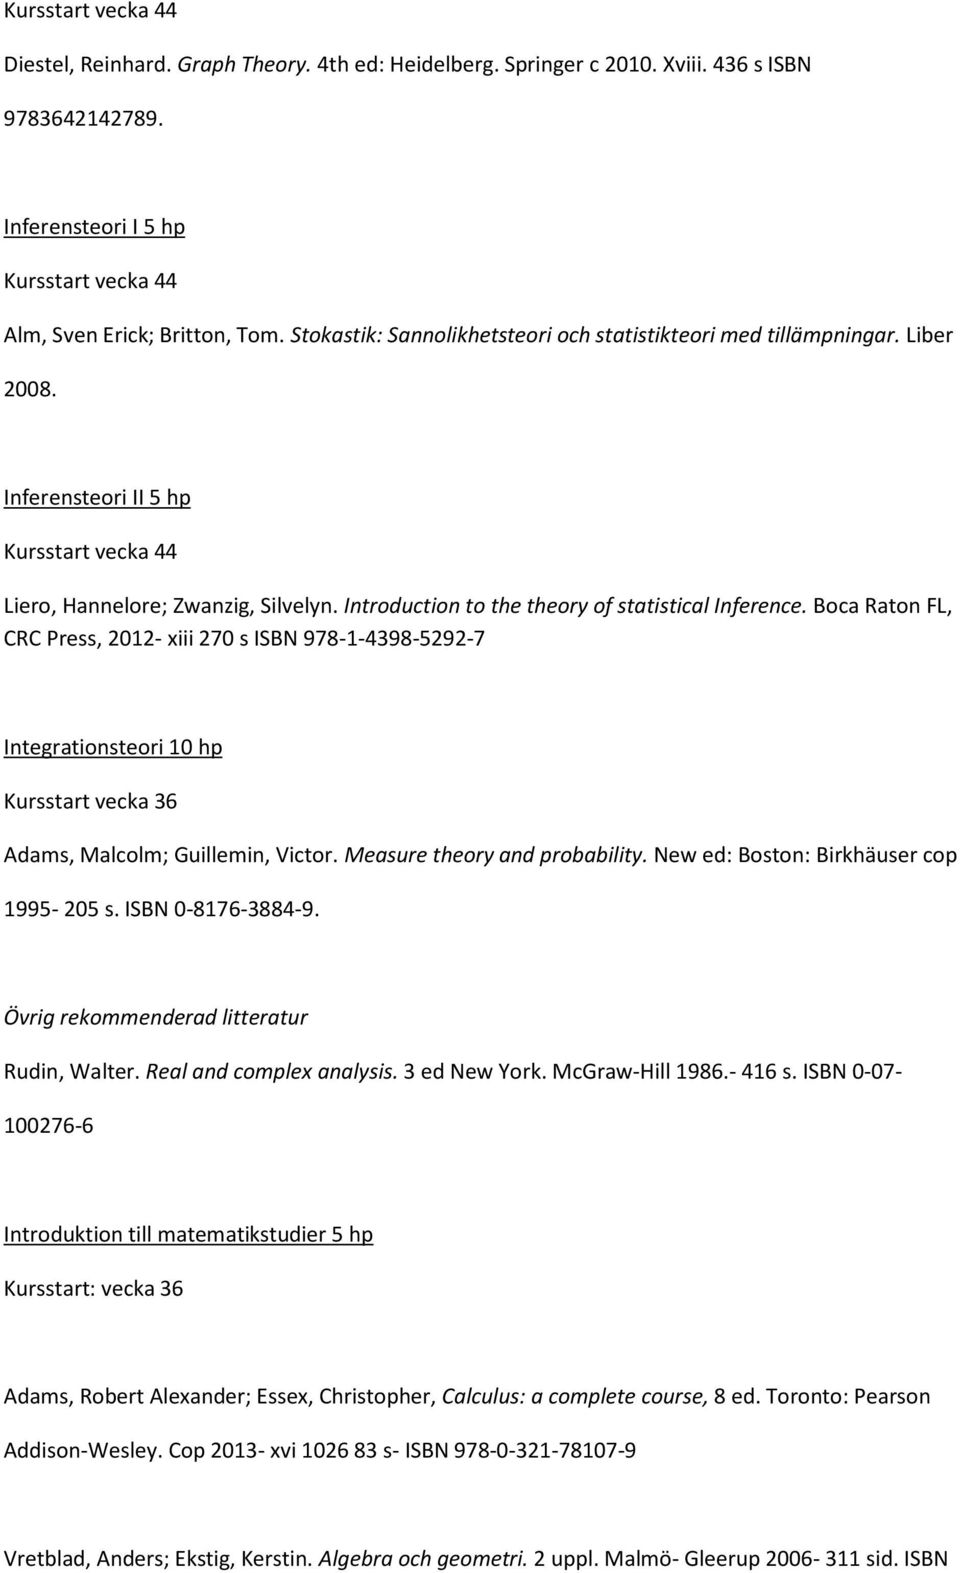 Boca Raton FL, CRC Press, 2012- xiii 270 s ISBN 978-1-4398-5292-7 Integrationsteori 10 hp Adams, Malcolm; Guillemin, Victor. Measure theory and probability. New ed: Boston: Birkhäuser cop 1995-205 s.